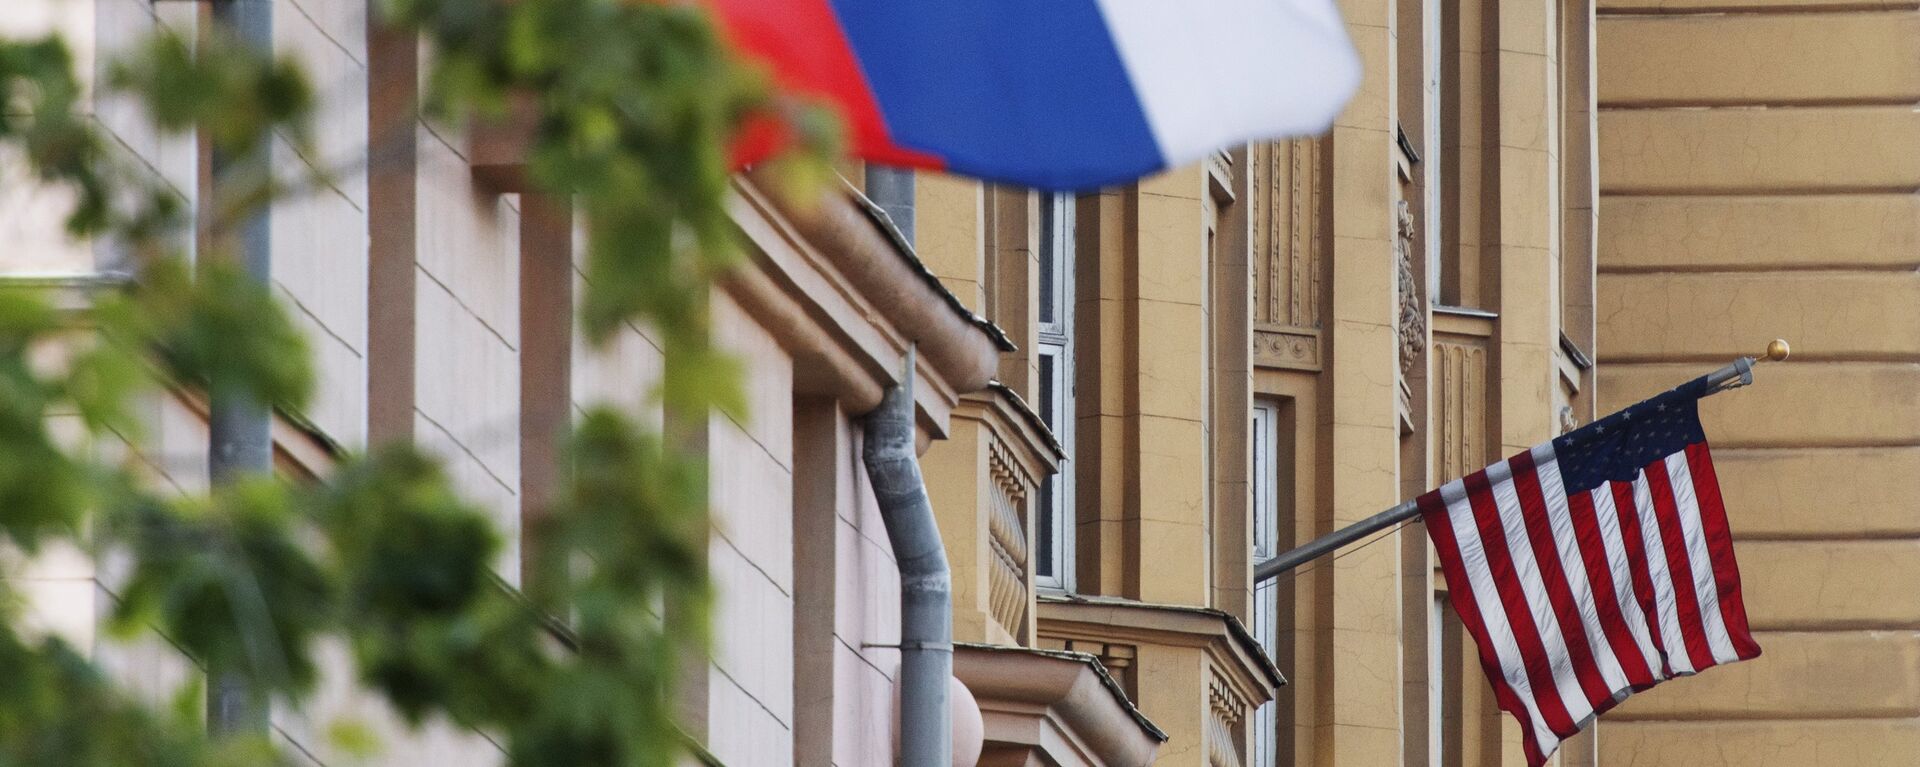 Banderas de EEUU y de Rusia en las proximidades de la Embajada de EEUU en Moscú. - Sputnik Mundo, 1920, 15.02.2021